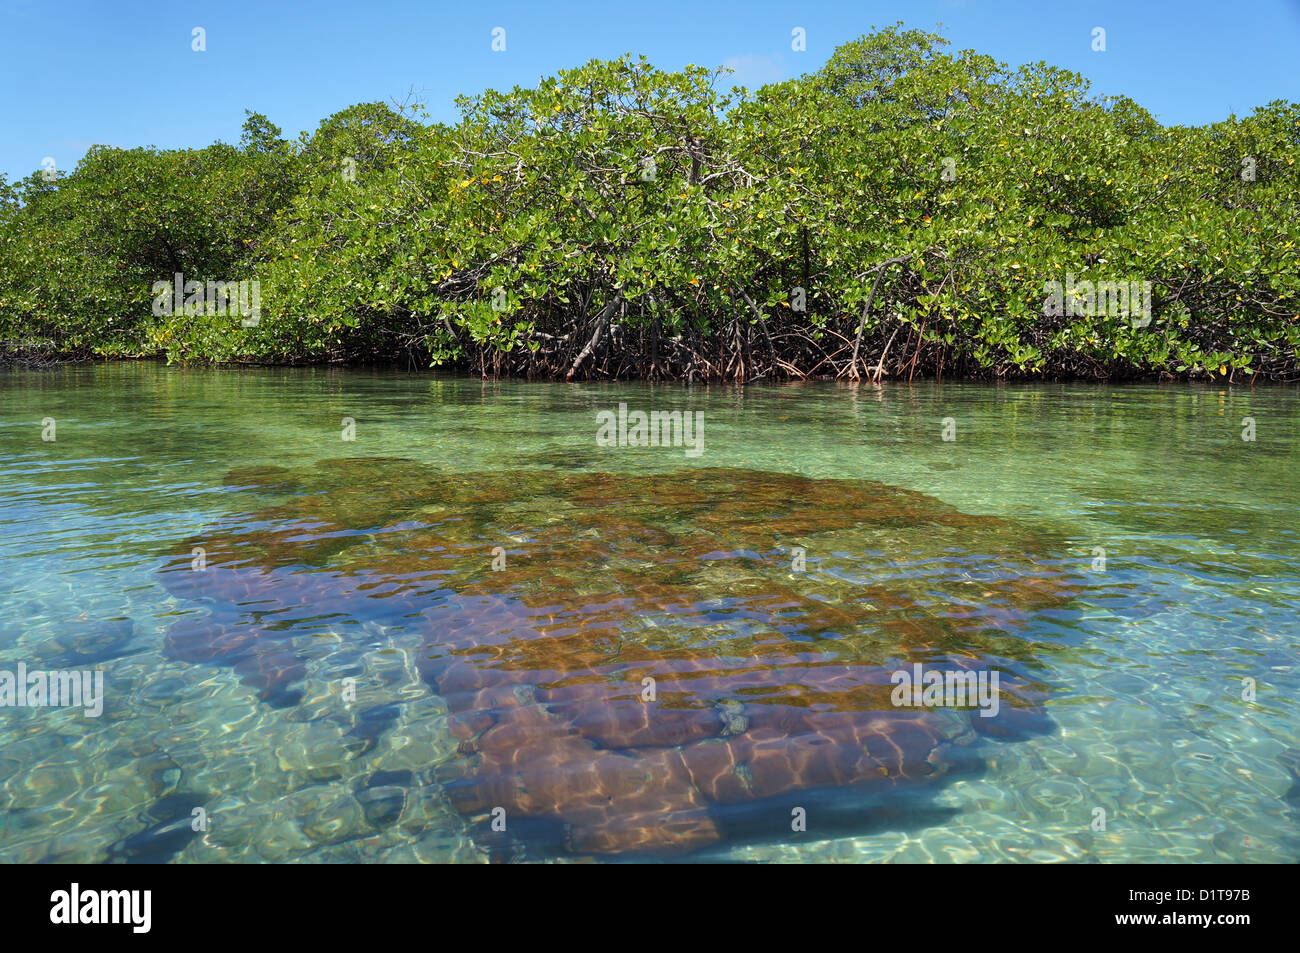 Starlette massive coral ci-dessous surface de l'eau avec des arbres de mangrove en arrière-plan, l'Amérique centrale, le Panama Banque D'Images